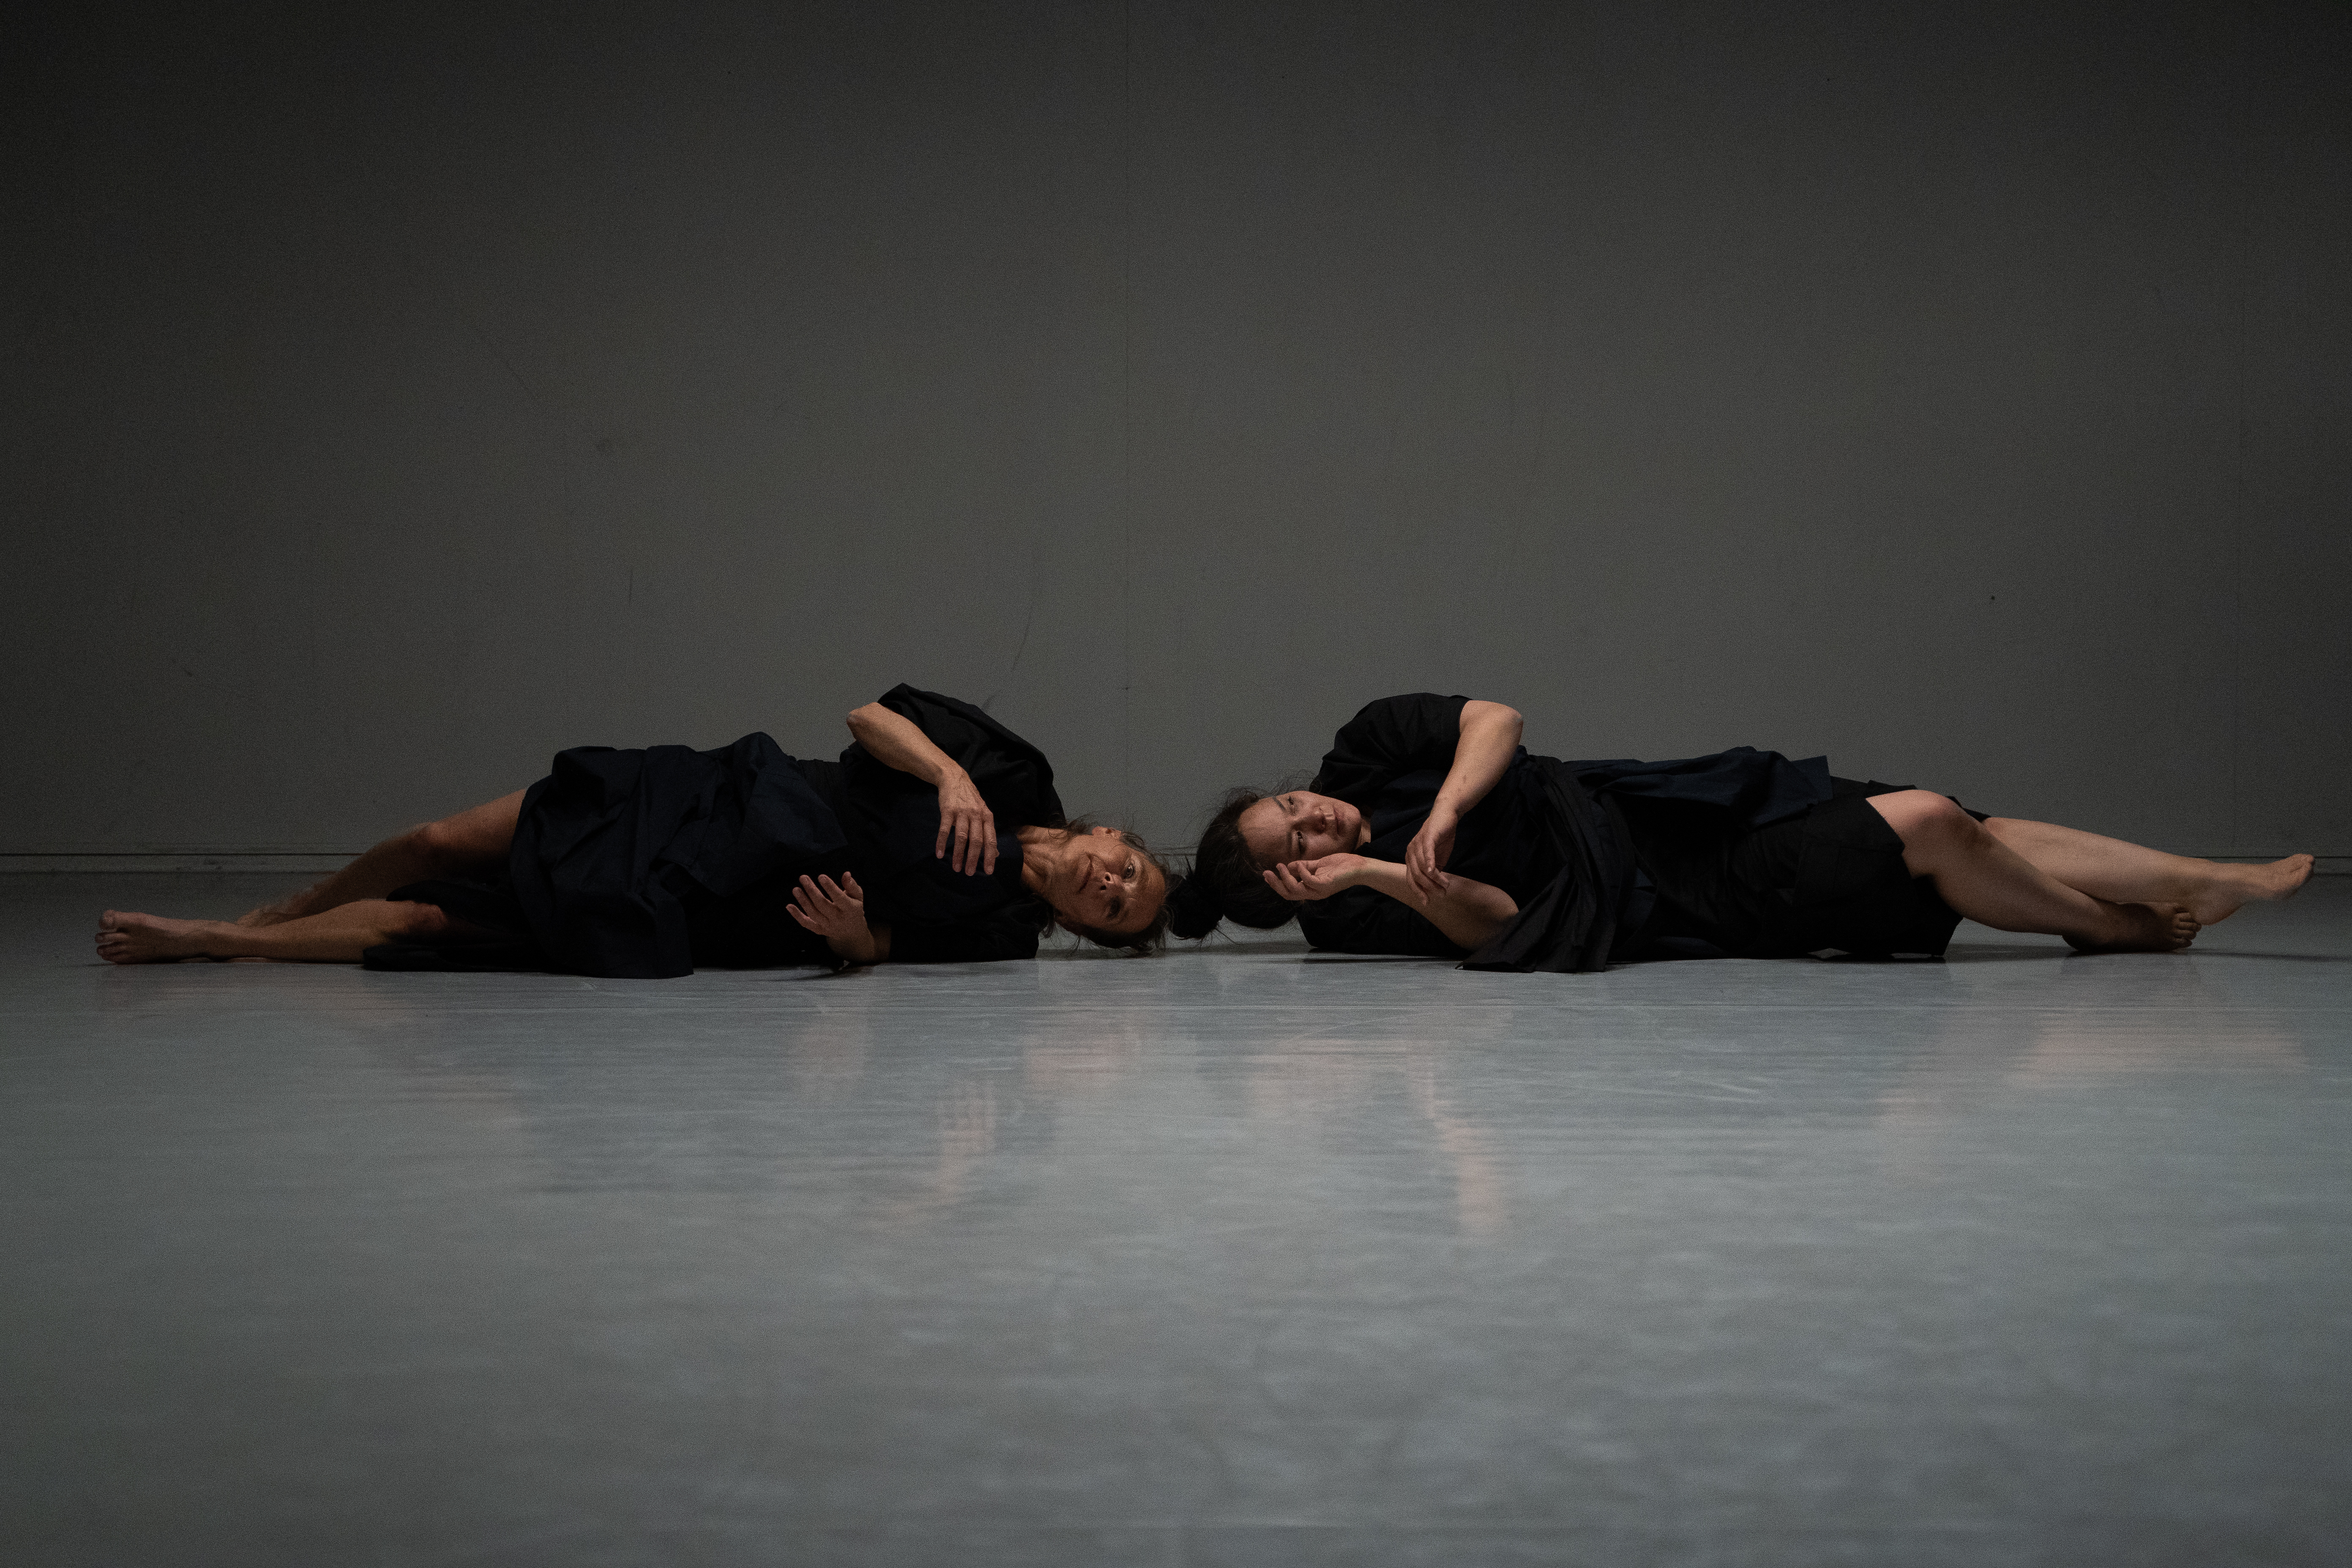 Scenebilde: To kvinner ligger på langs scenen med hode mot hode i sorte klær, slik at hodene danner midten av bildet og føttene i hver sin kant